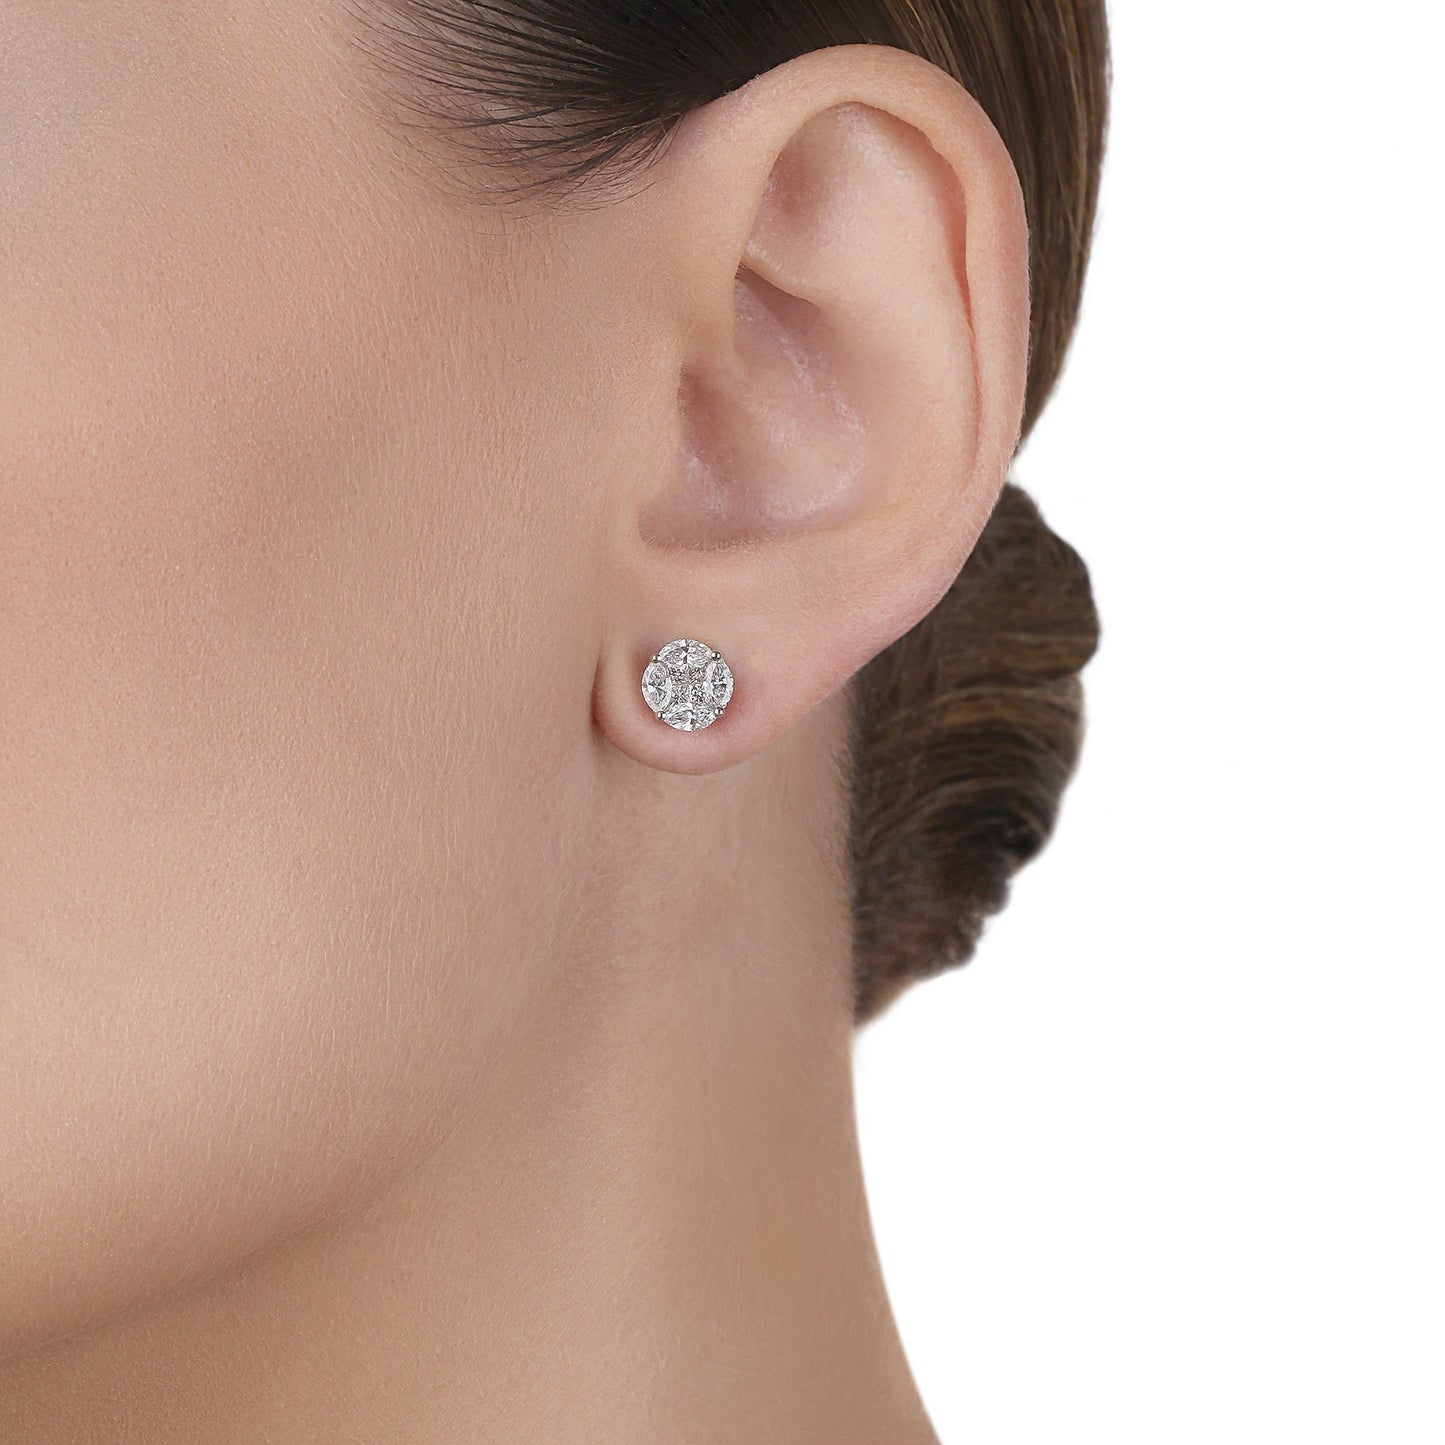 XL Diamond Illusion Stud Earrings | Bridal jewelery set 